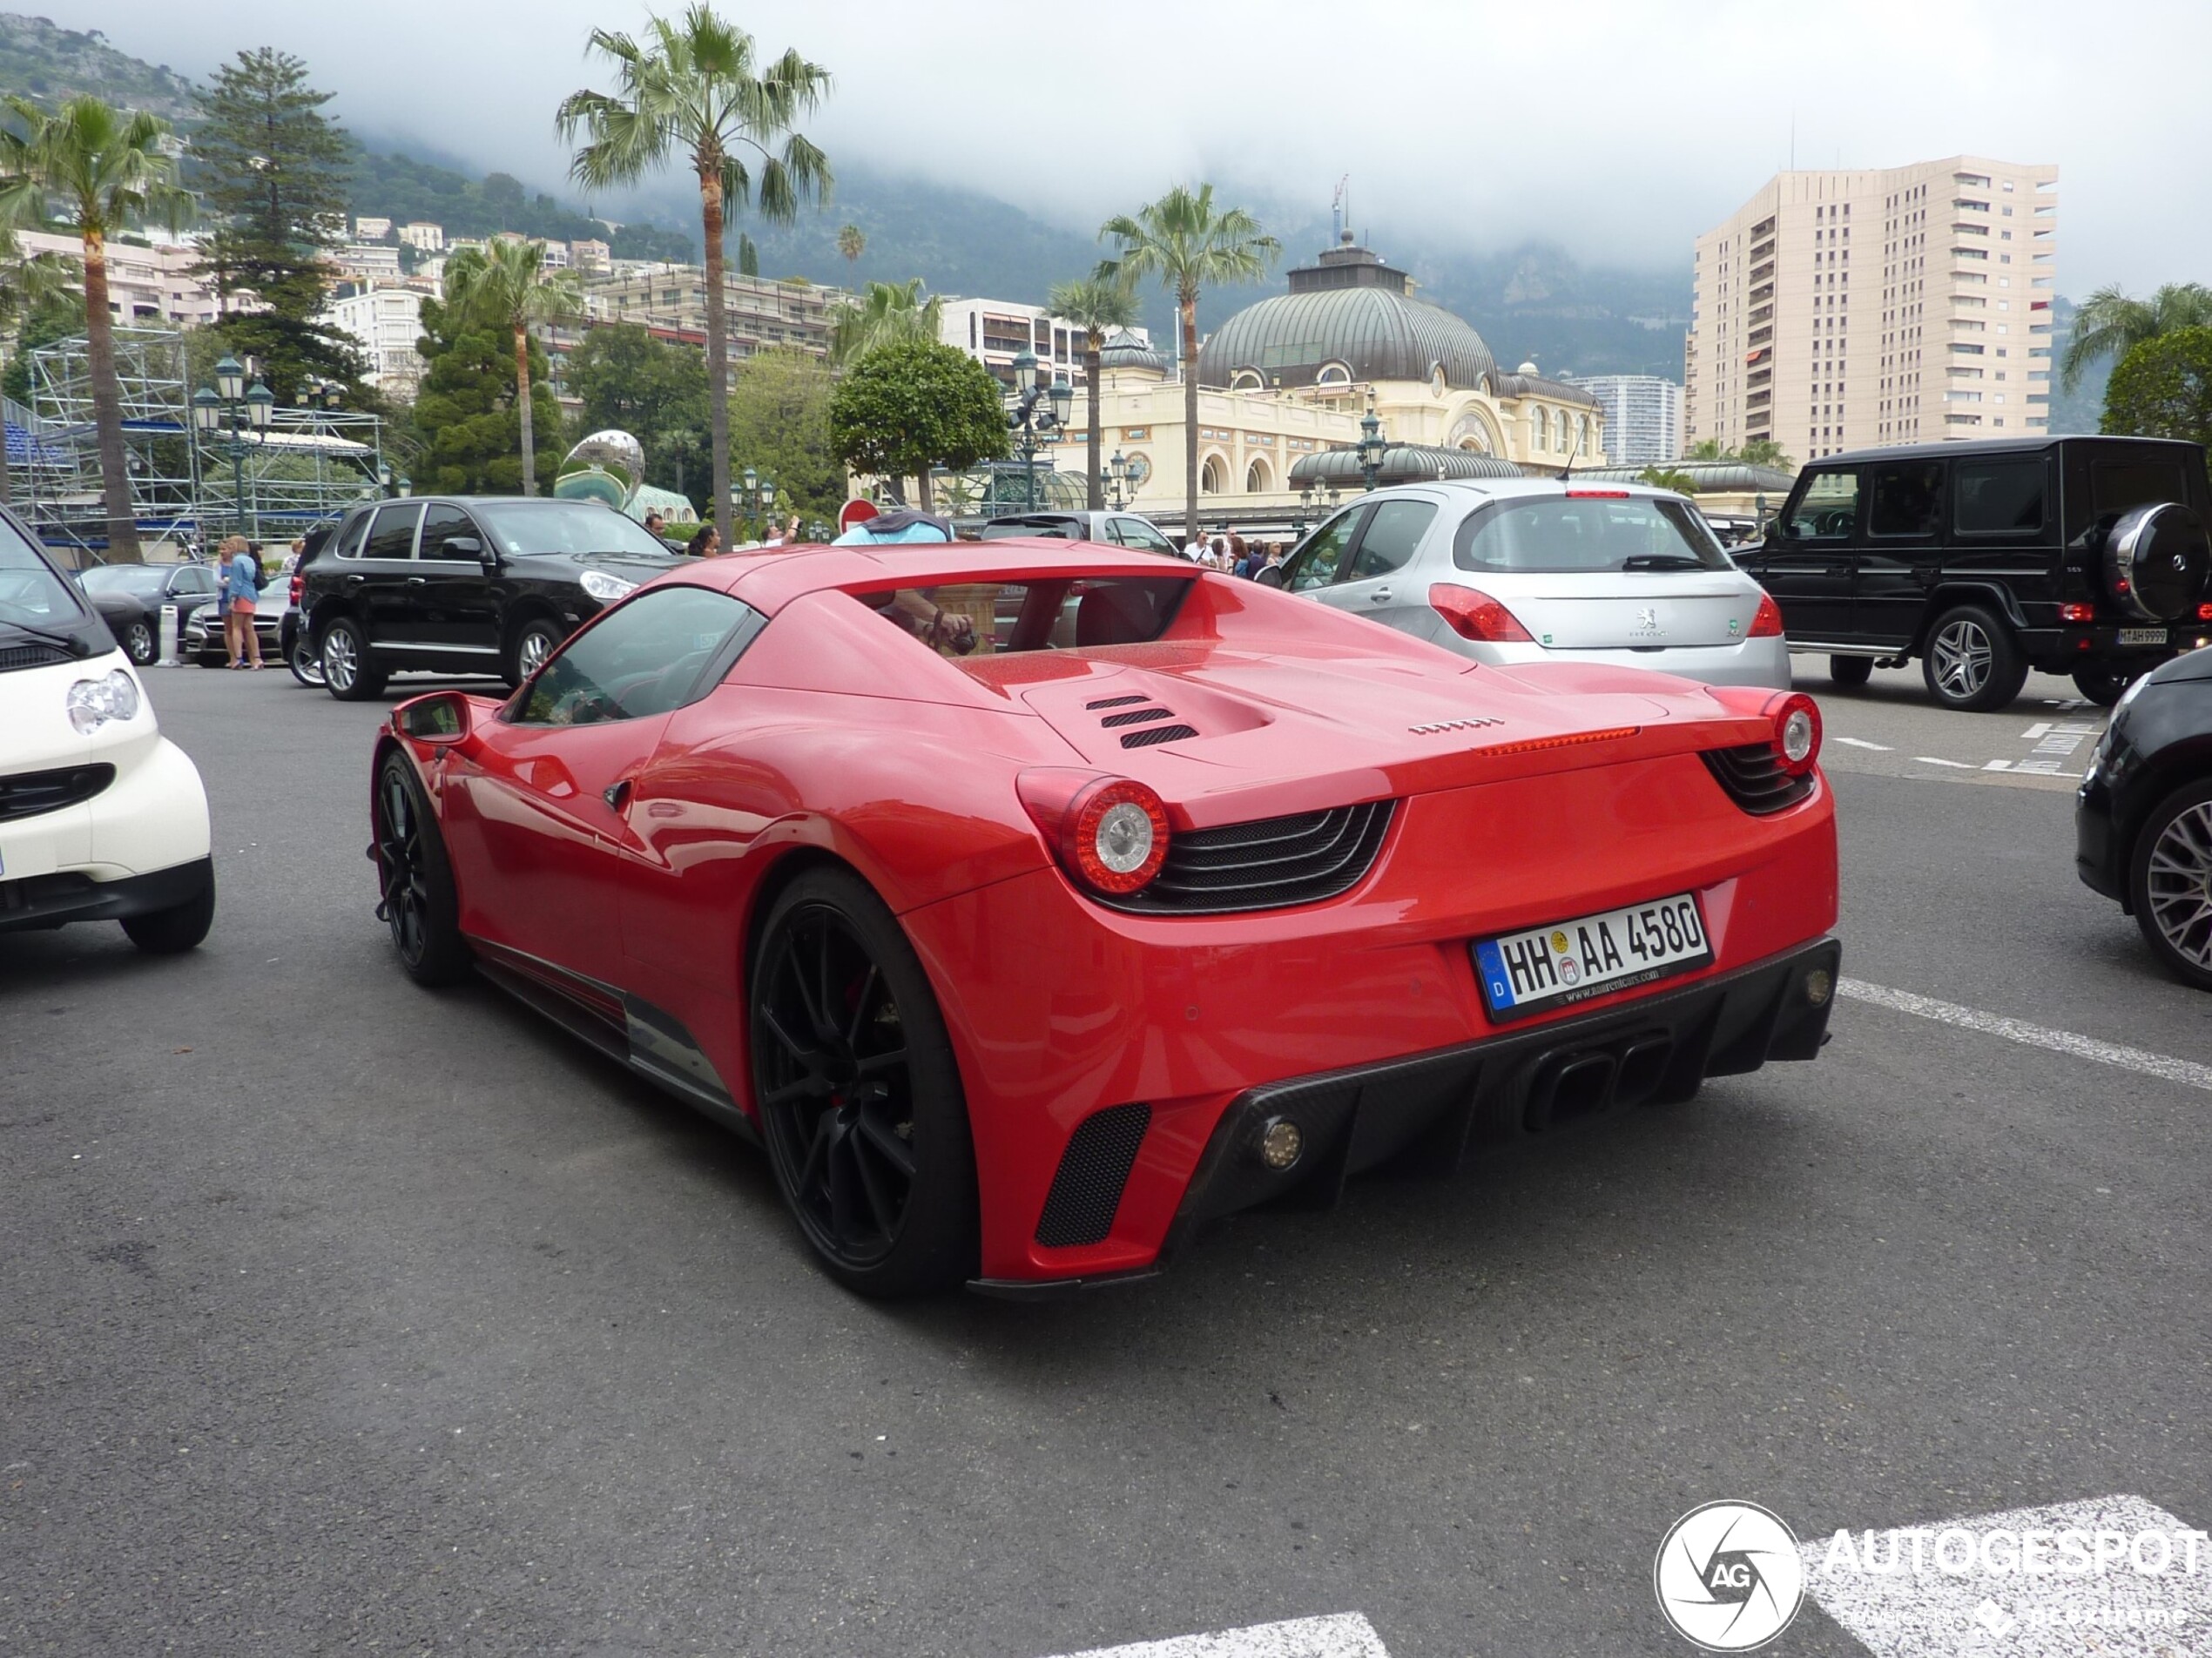 Gelimiteerde Ferrari met speciale bodykit gespot in Monaco